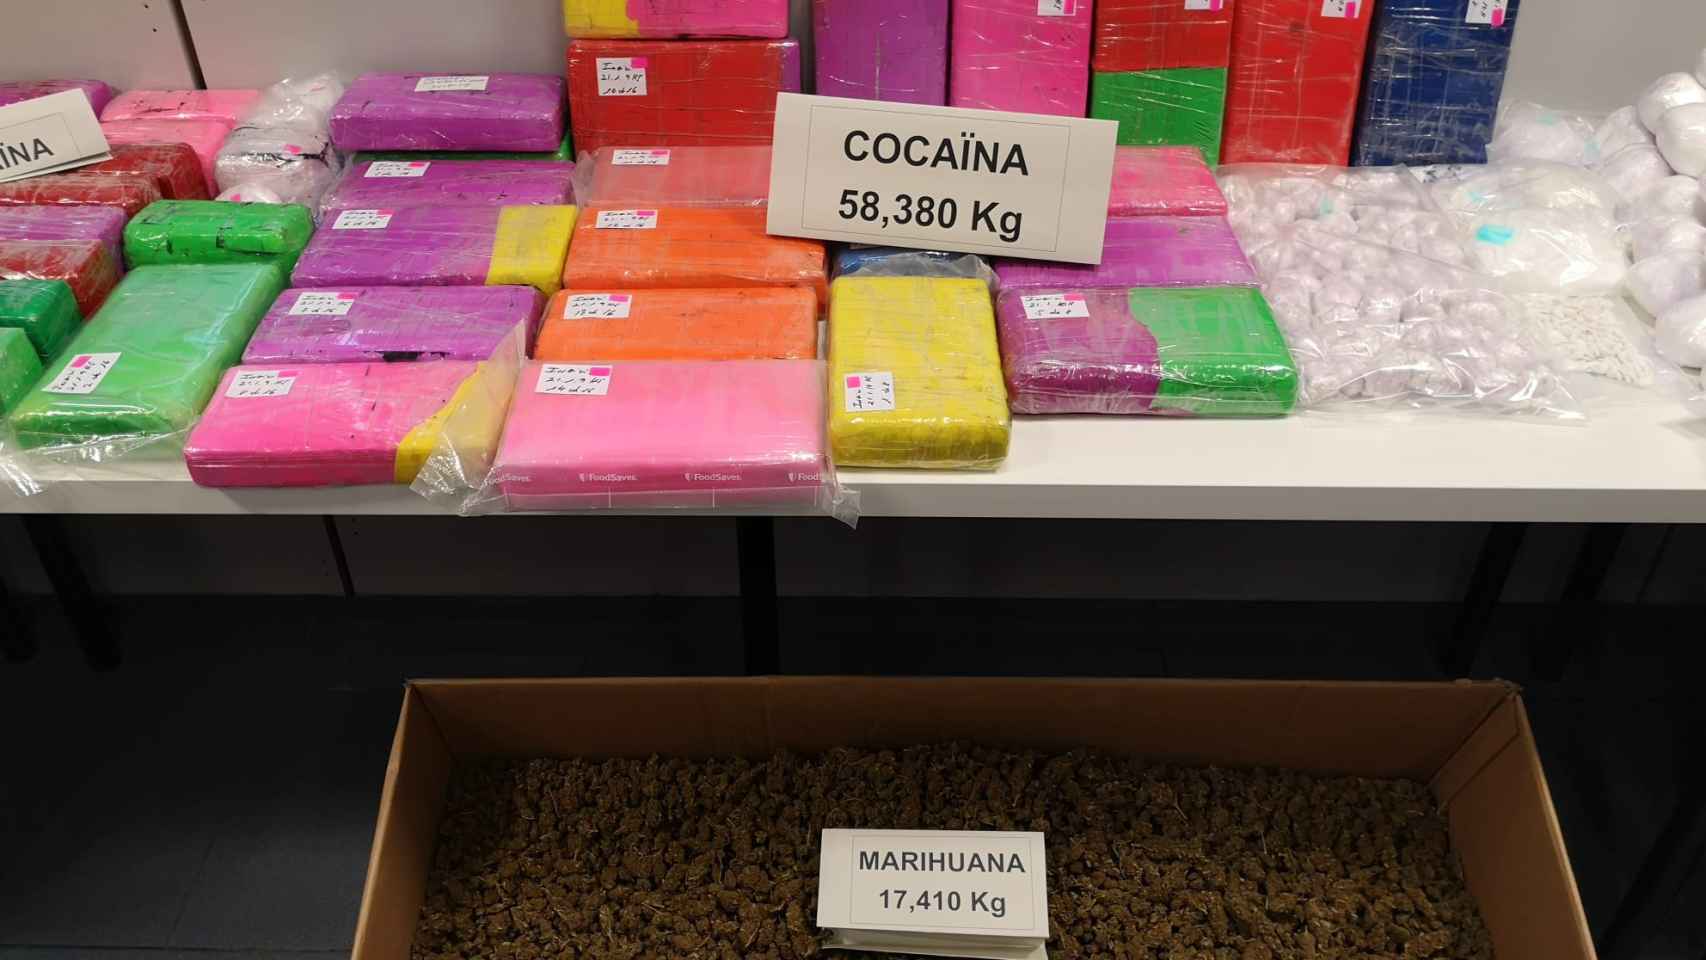 Los mossos incautaron 54 kilogramos de cocaína en el operativo.